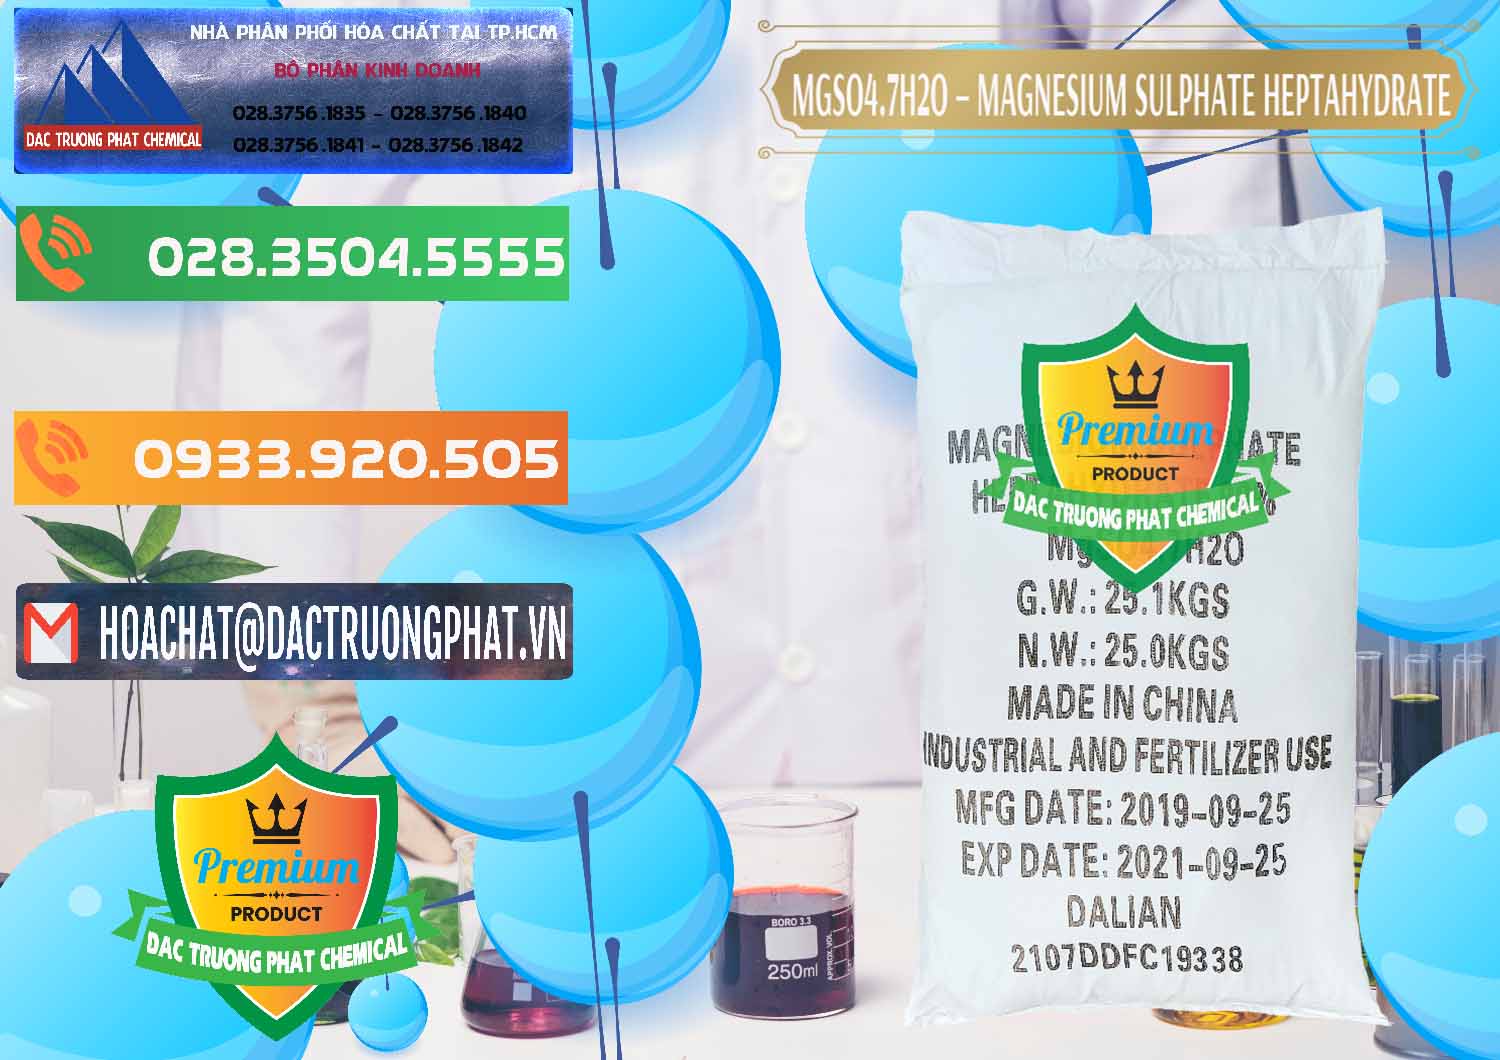 Nơi bán & cung cấp MGSO4.7H2O – Magnesium Sulphate Heptahydrate Trung Quốc China - 0094 - Cty cung ứng & phân phối hóa chất tại TP.HCM - hoachatxulynuoc.com.vn